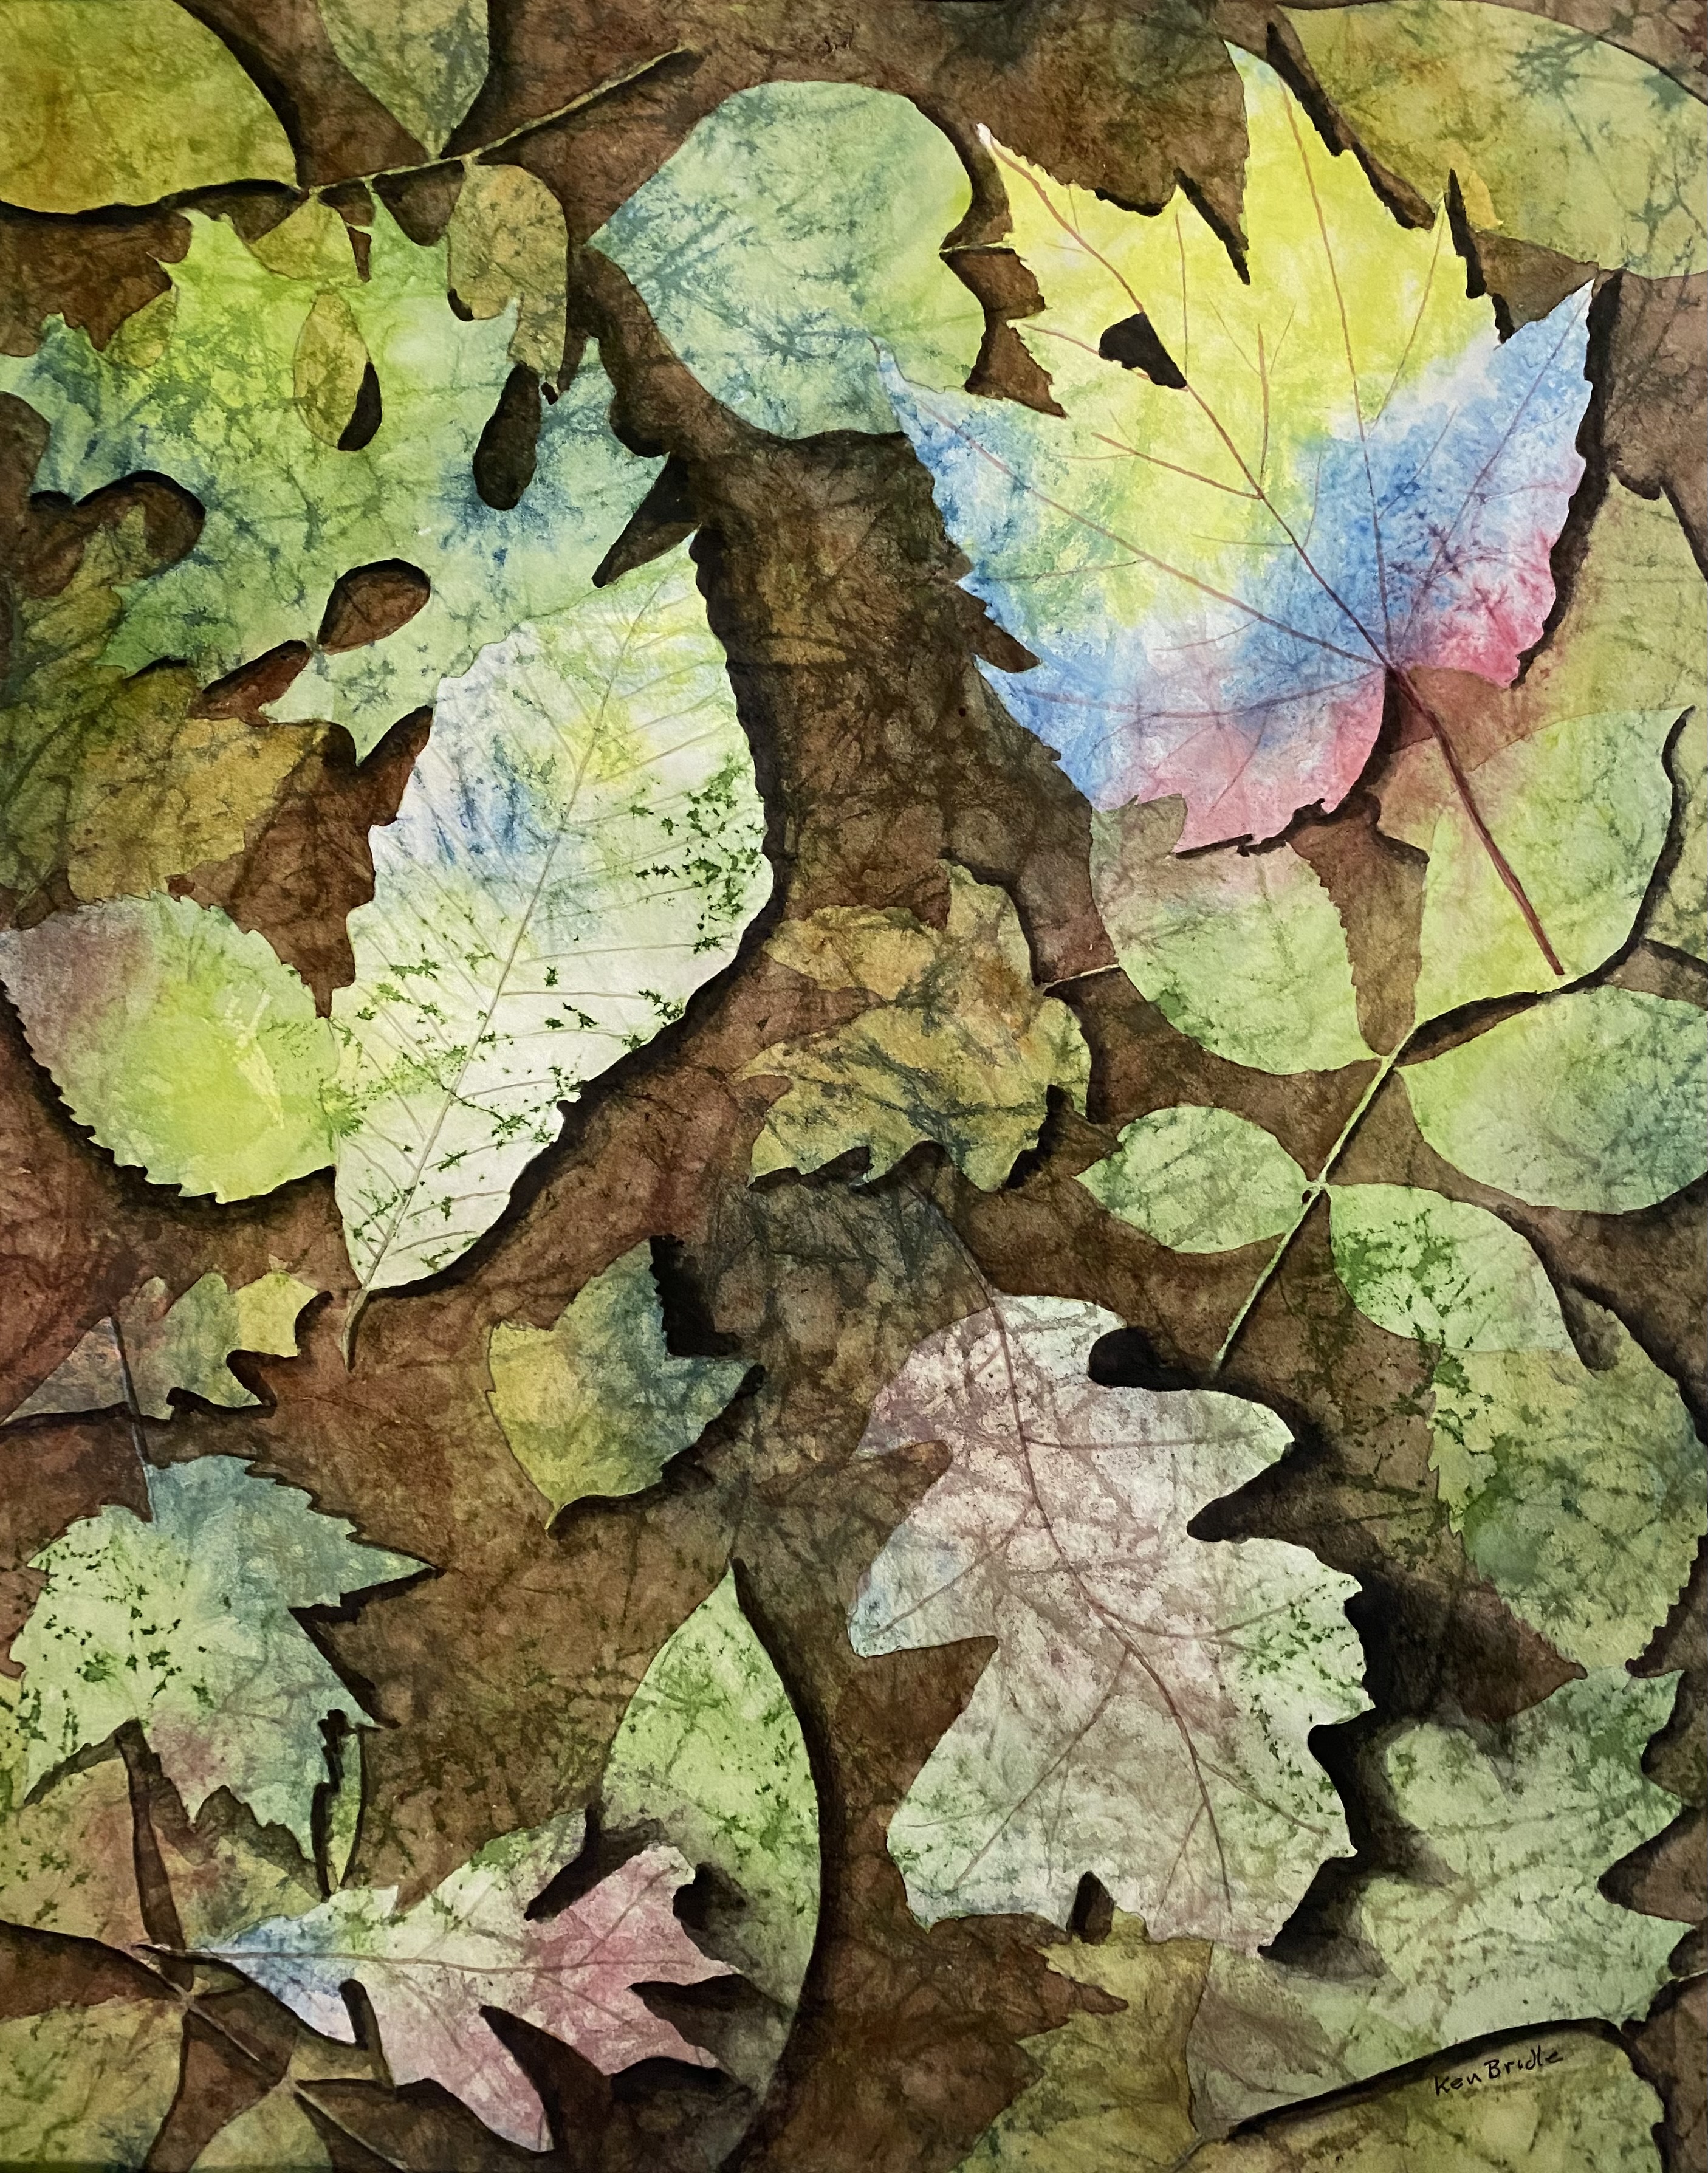 Leaf collage header image by Ken Bridle